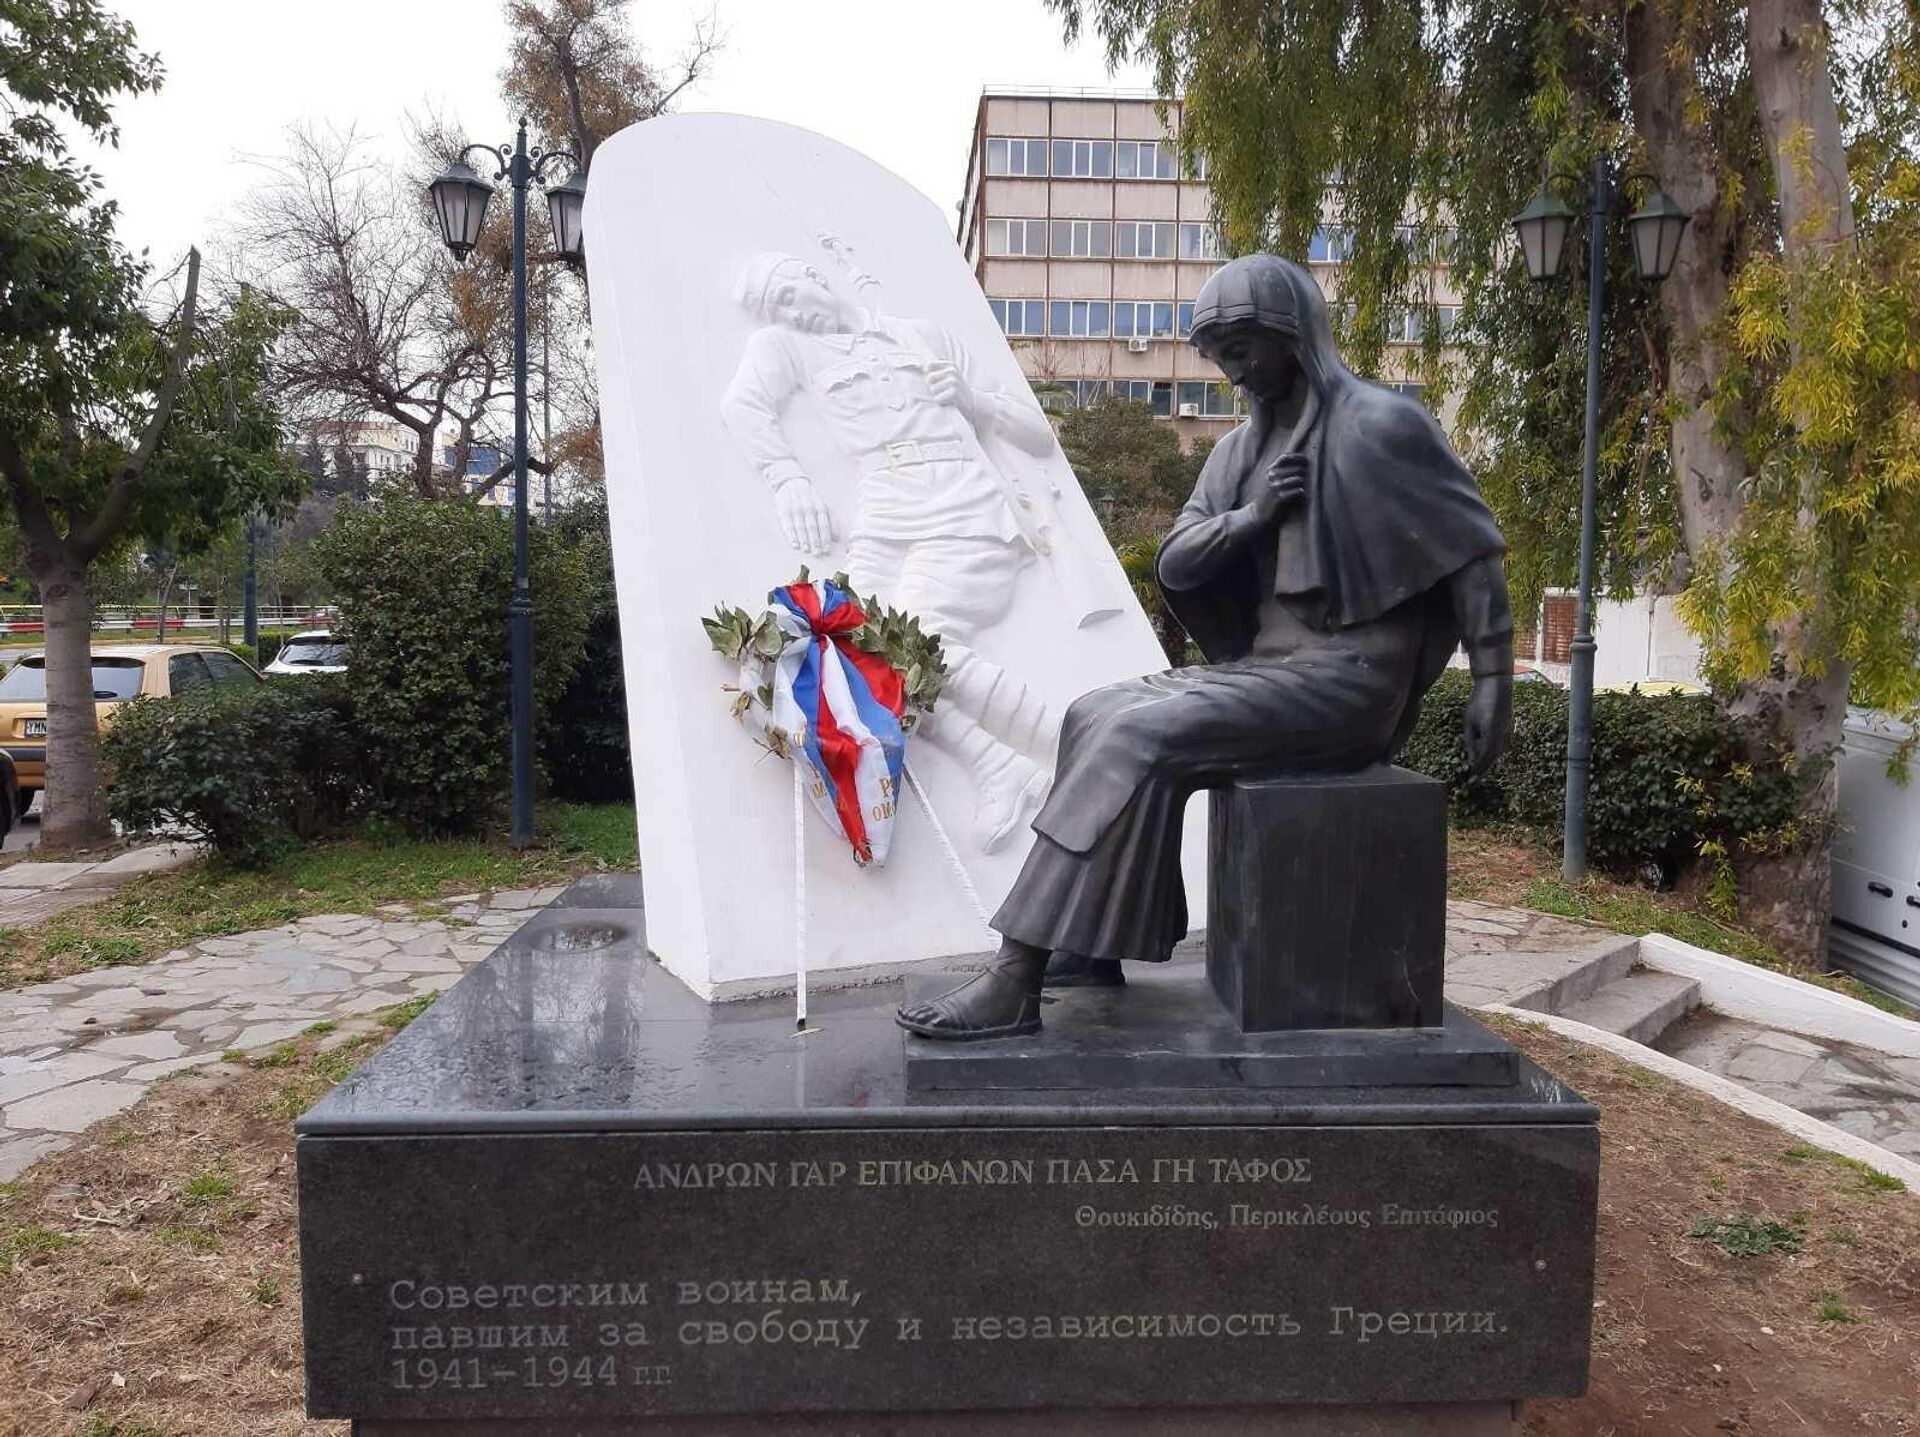 Spomenik Sovjetskim vojnicima koji su pali za slobodu i nezavisnost Grčke očišćen nakon što su ga oskrnavili - Sputnik Srbija, 1920, 20.03.2022